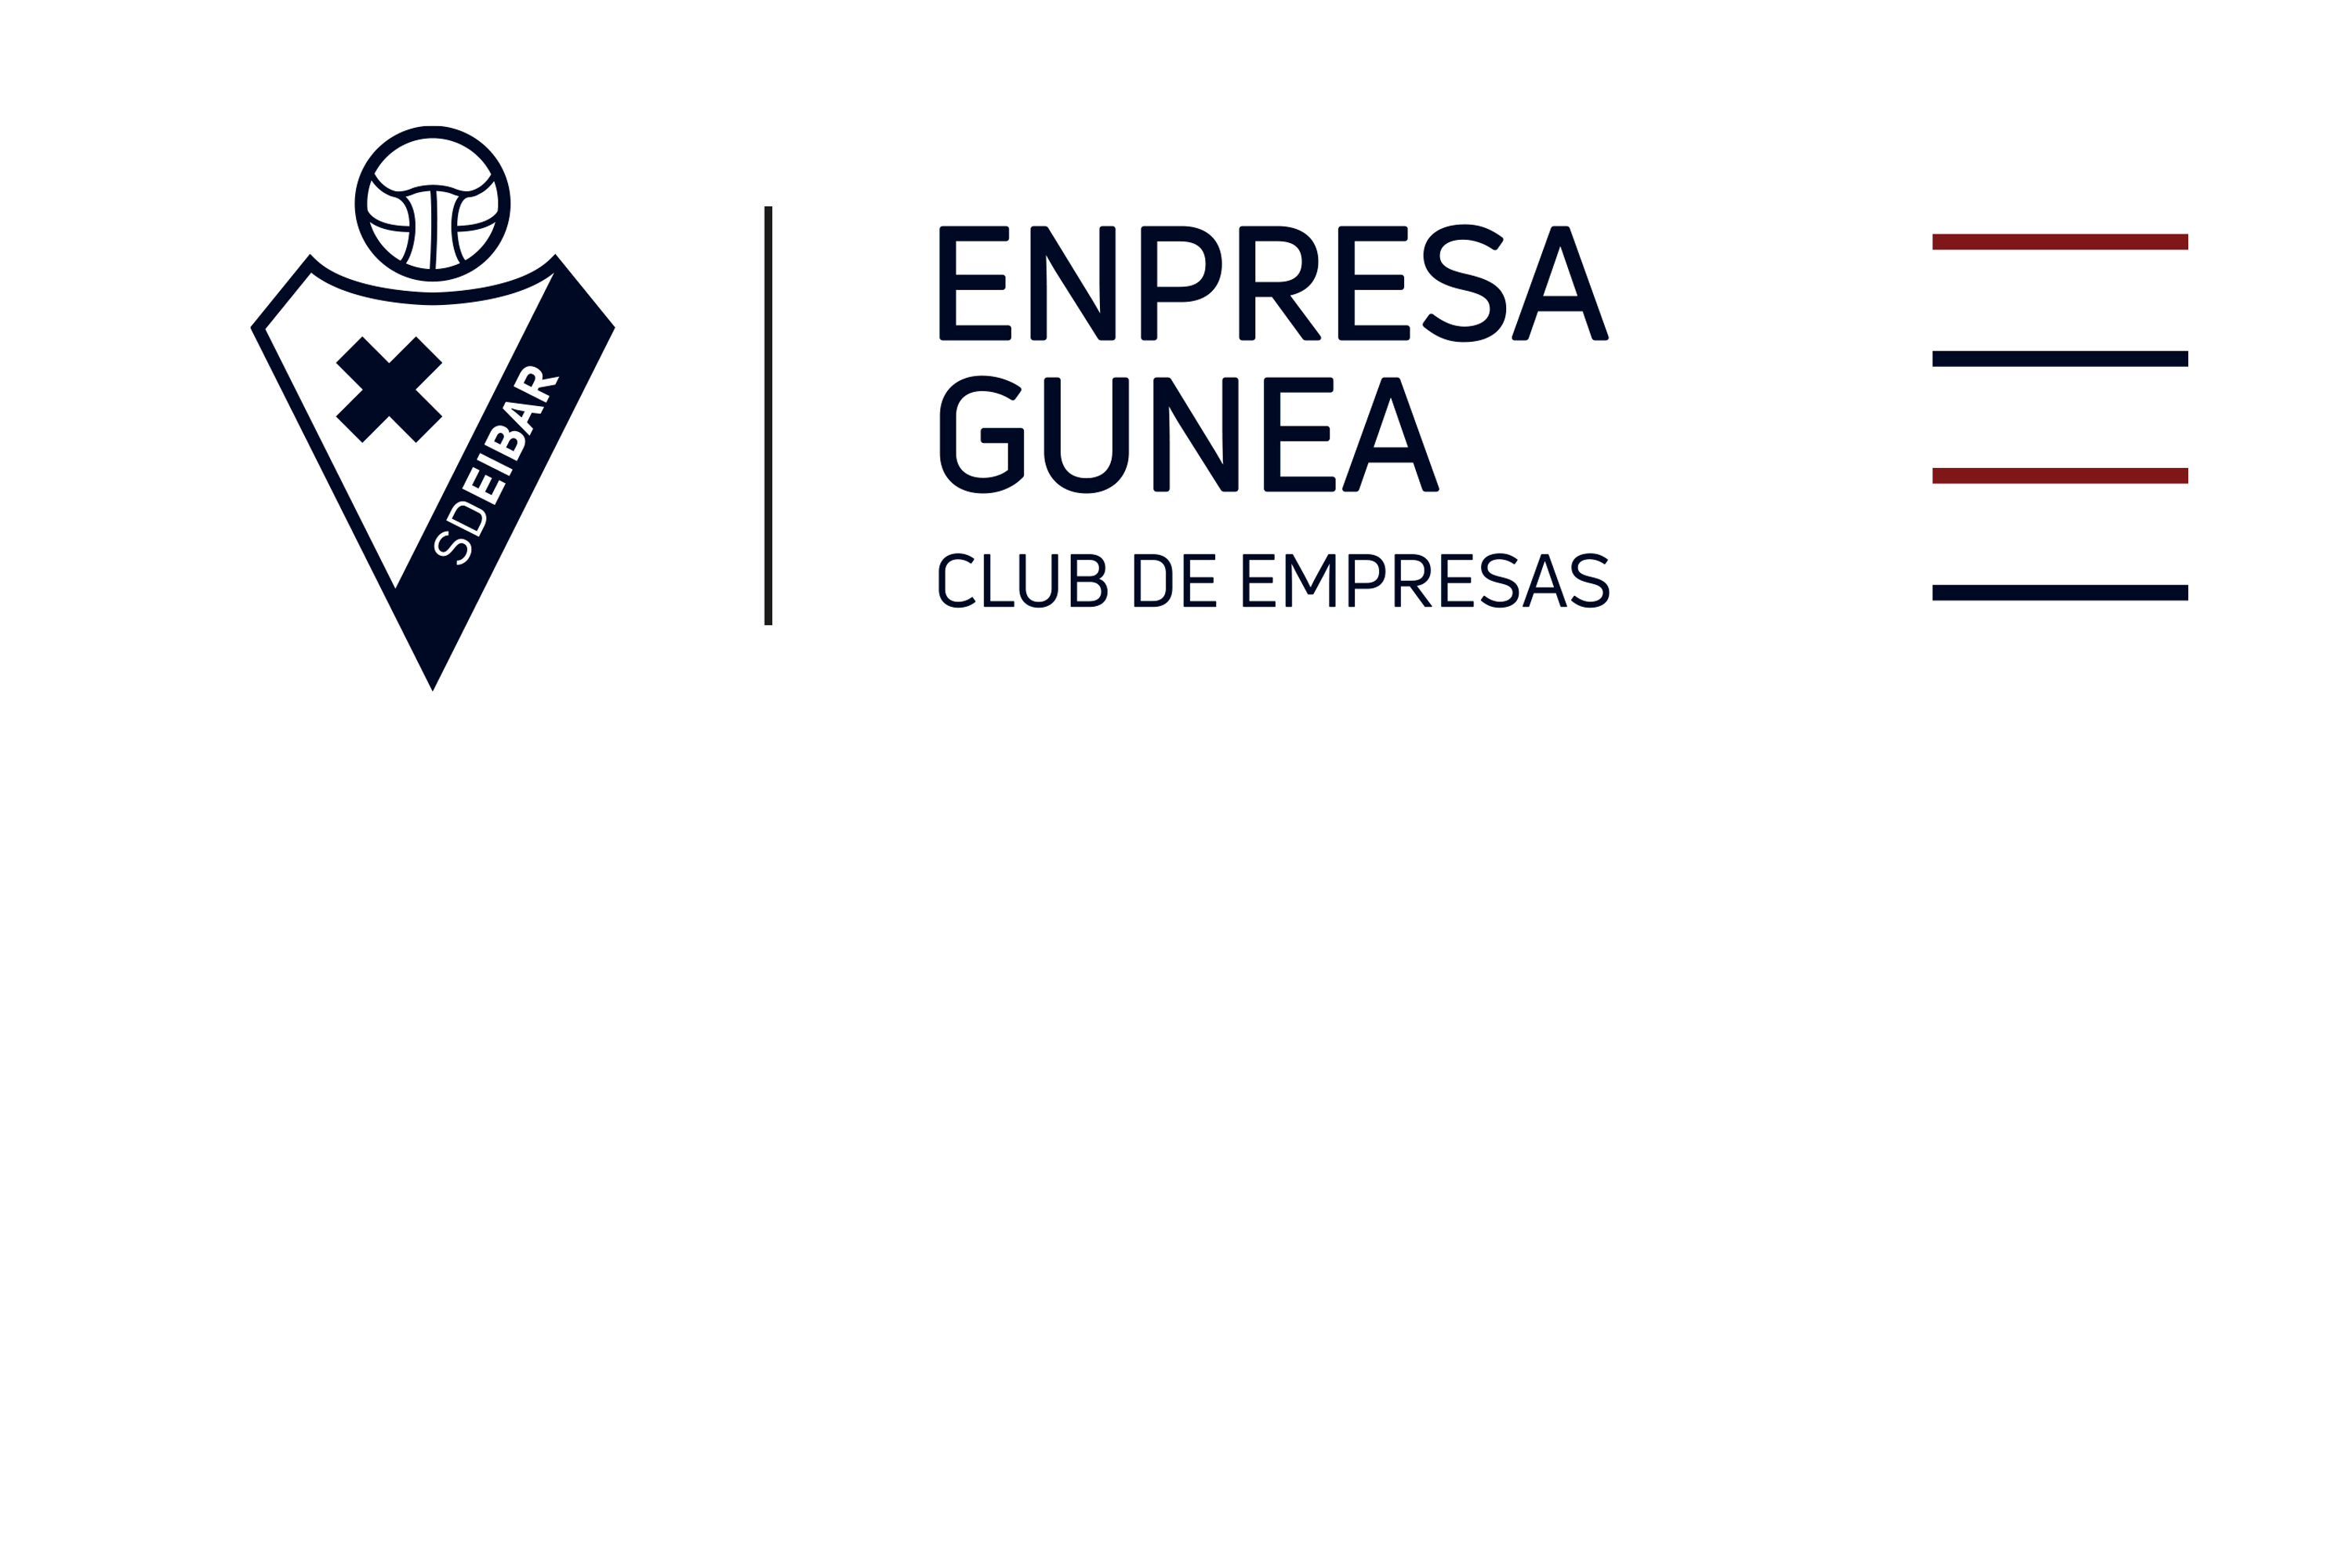 La SD Eibar pone en marcha Enpresa Gunea, el Club de Empresas de la entidad armera